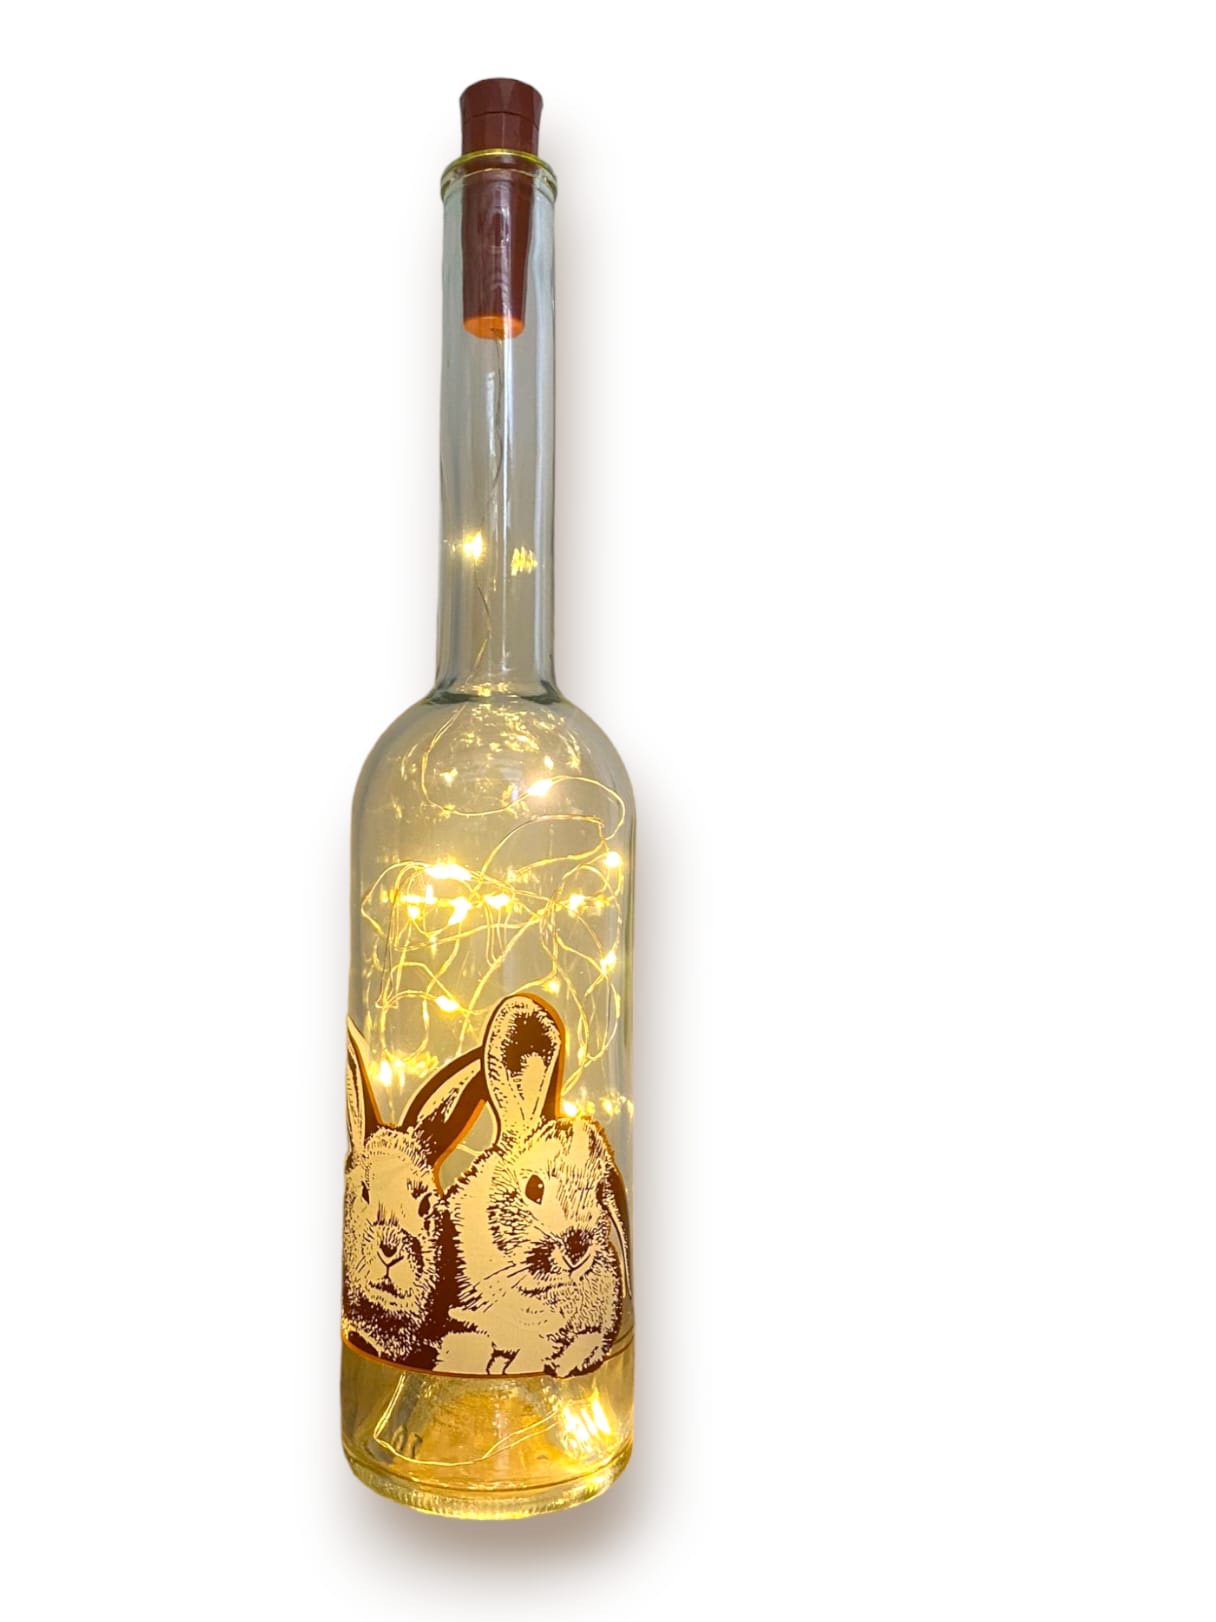 konijnenafbeelding op fles met sfeervolle verlichting.